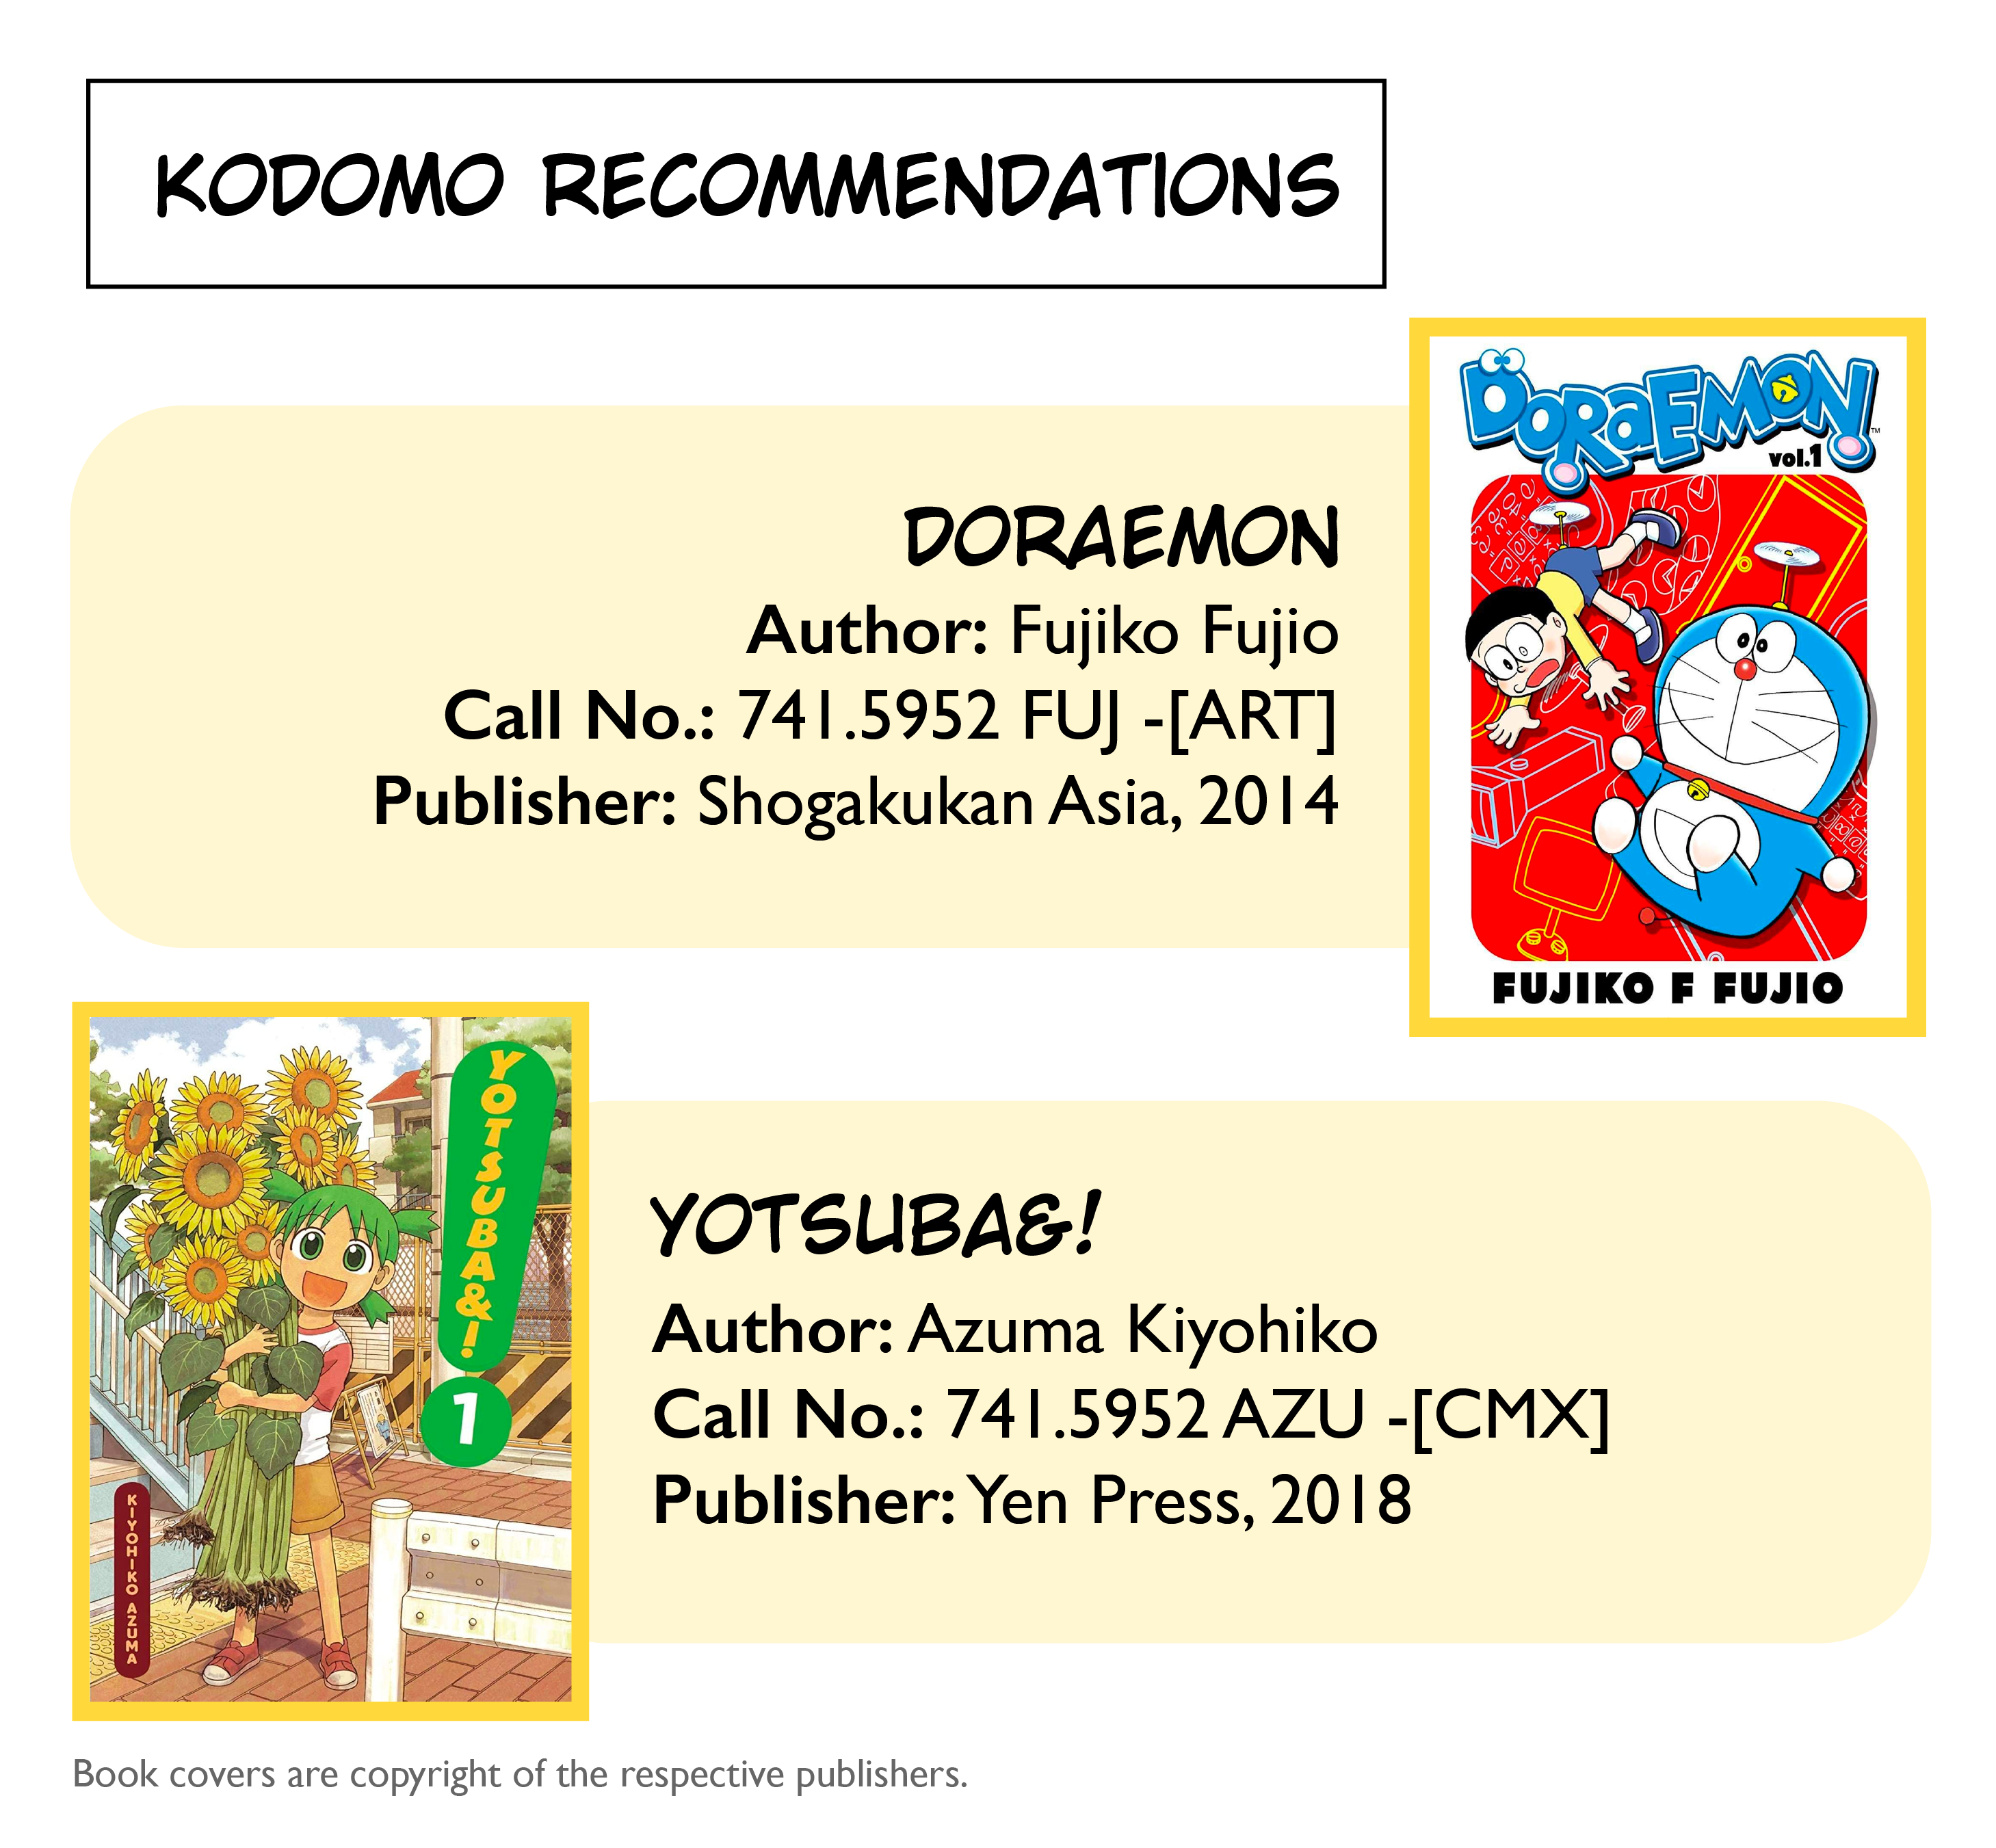 Kodomo recommendations include Doraemon and Yotsuba&!